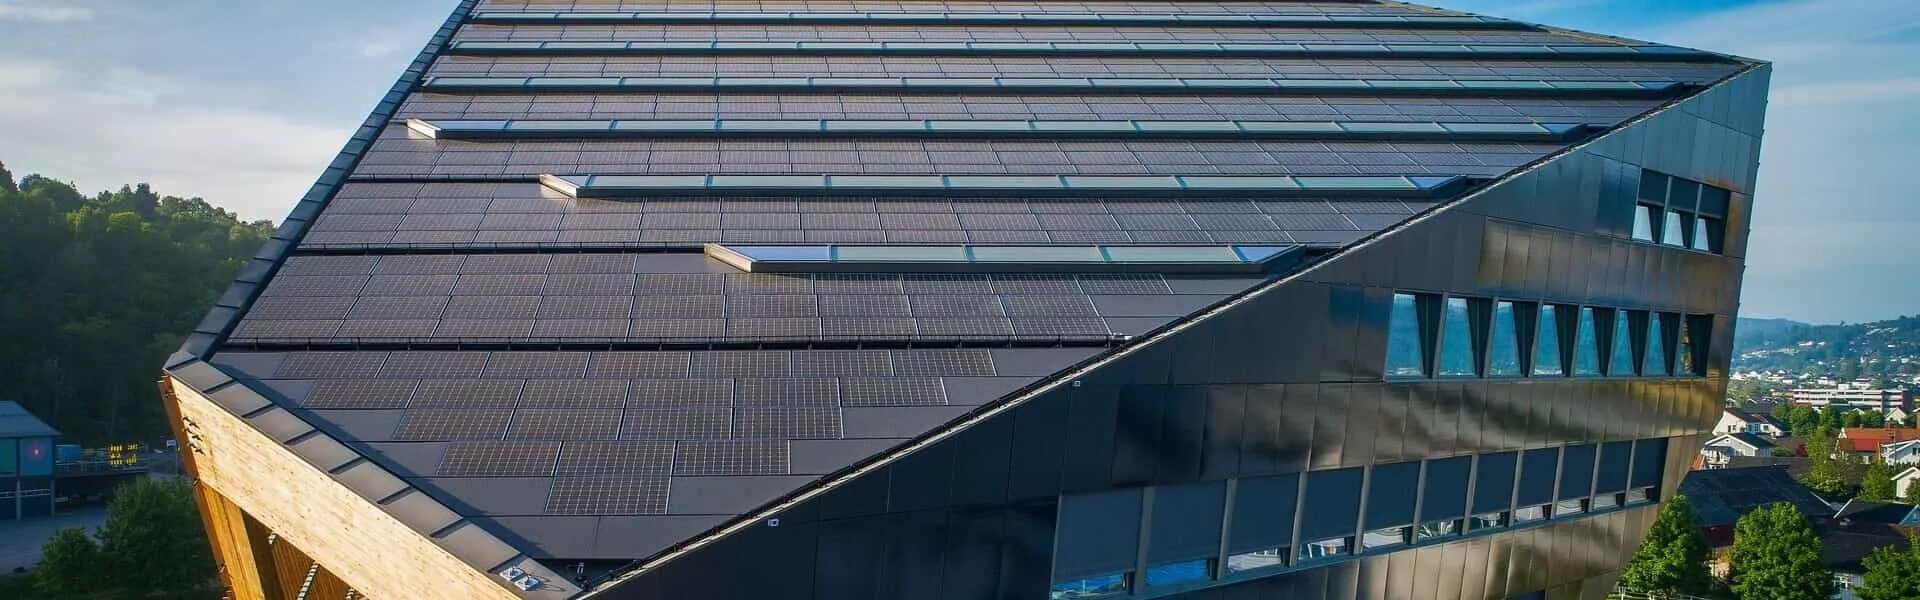 El proyecto de Maxeon es un logro en materia de edificios de energía positiva y ayuda a descarbonizar toda la industria.  